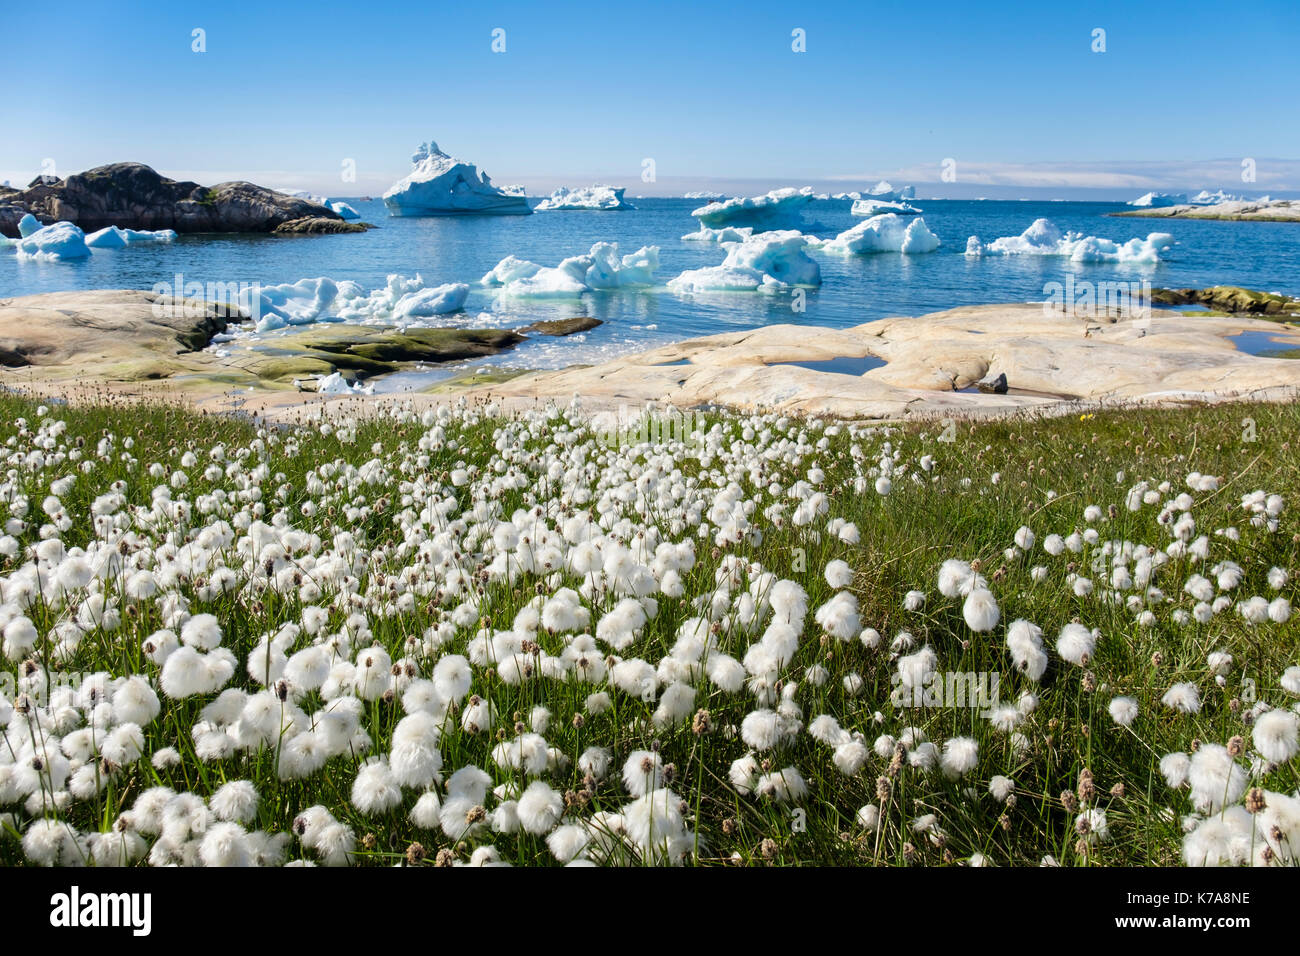 Arktis Wollgras Eriophorum callitrix wachsen auf Tundra Landschaft mit Eisberge in der Diskobucht offshore Küste im Sommer. Grönland Ilulissat Stockfoto